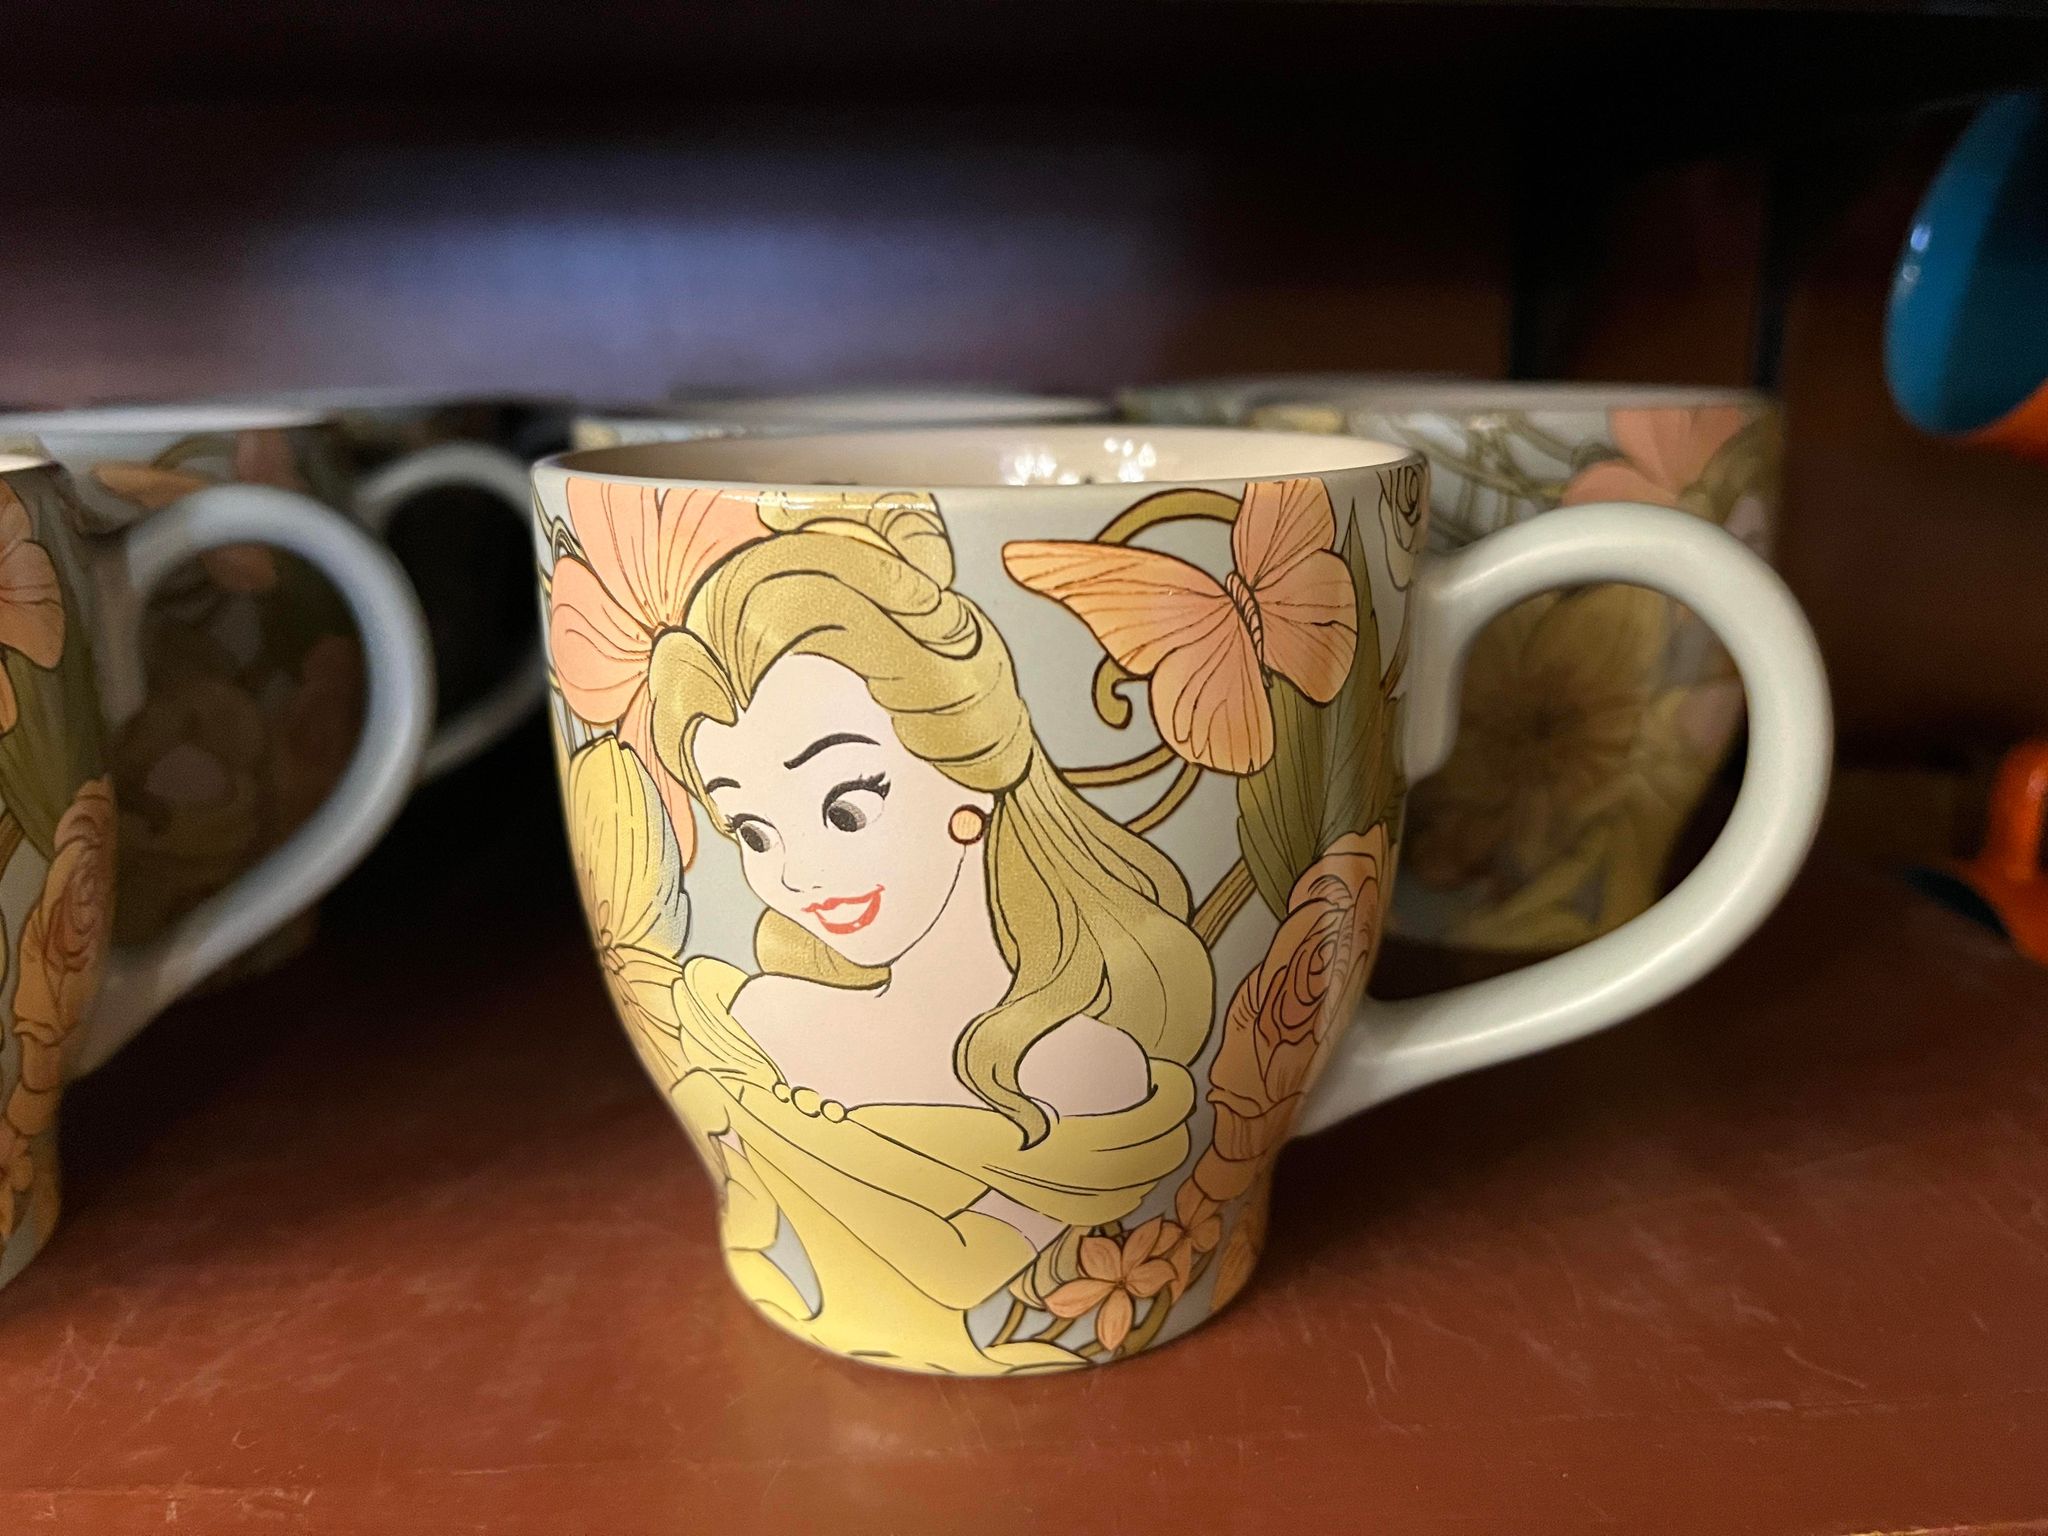 Disney Belle ''Enchanted Beauty'' Mug